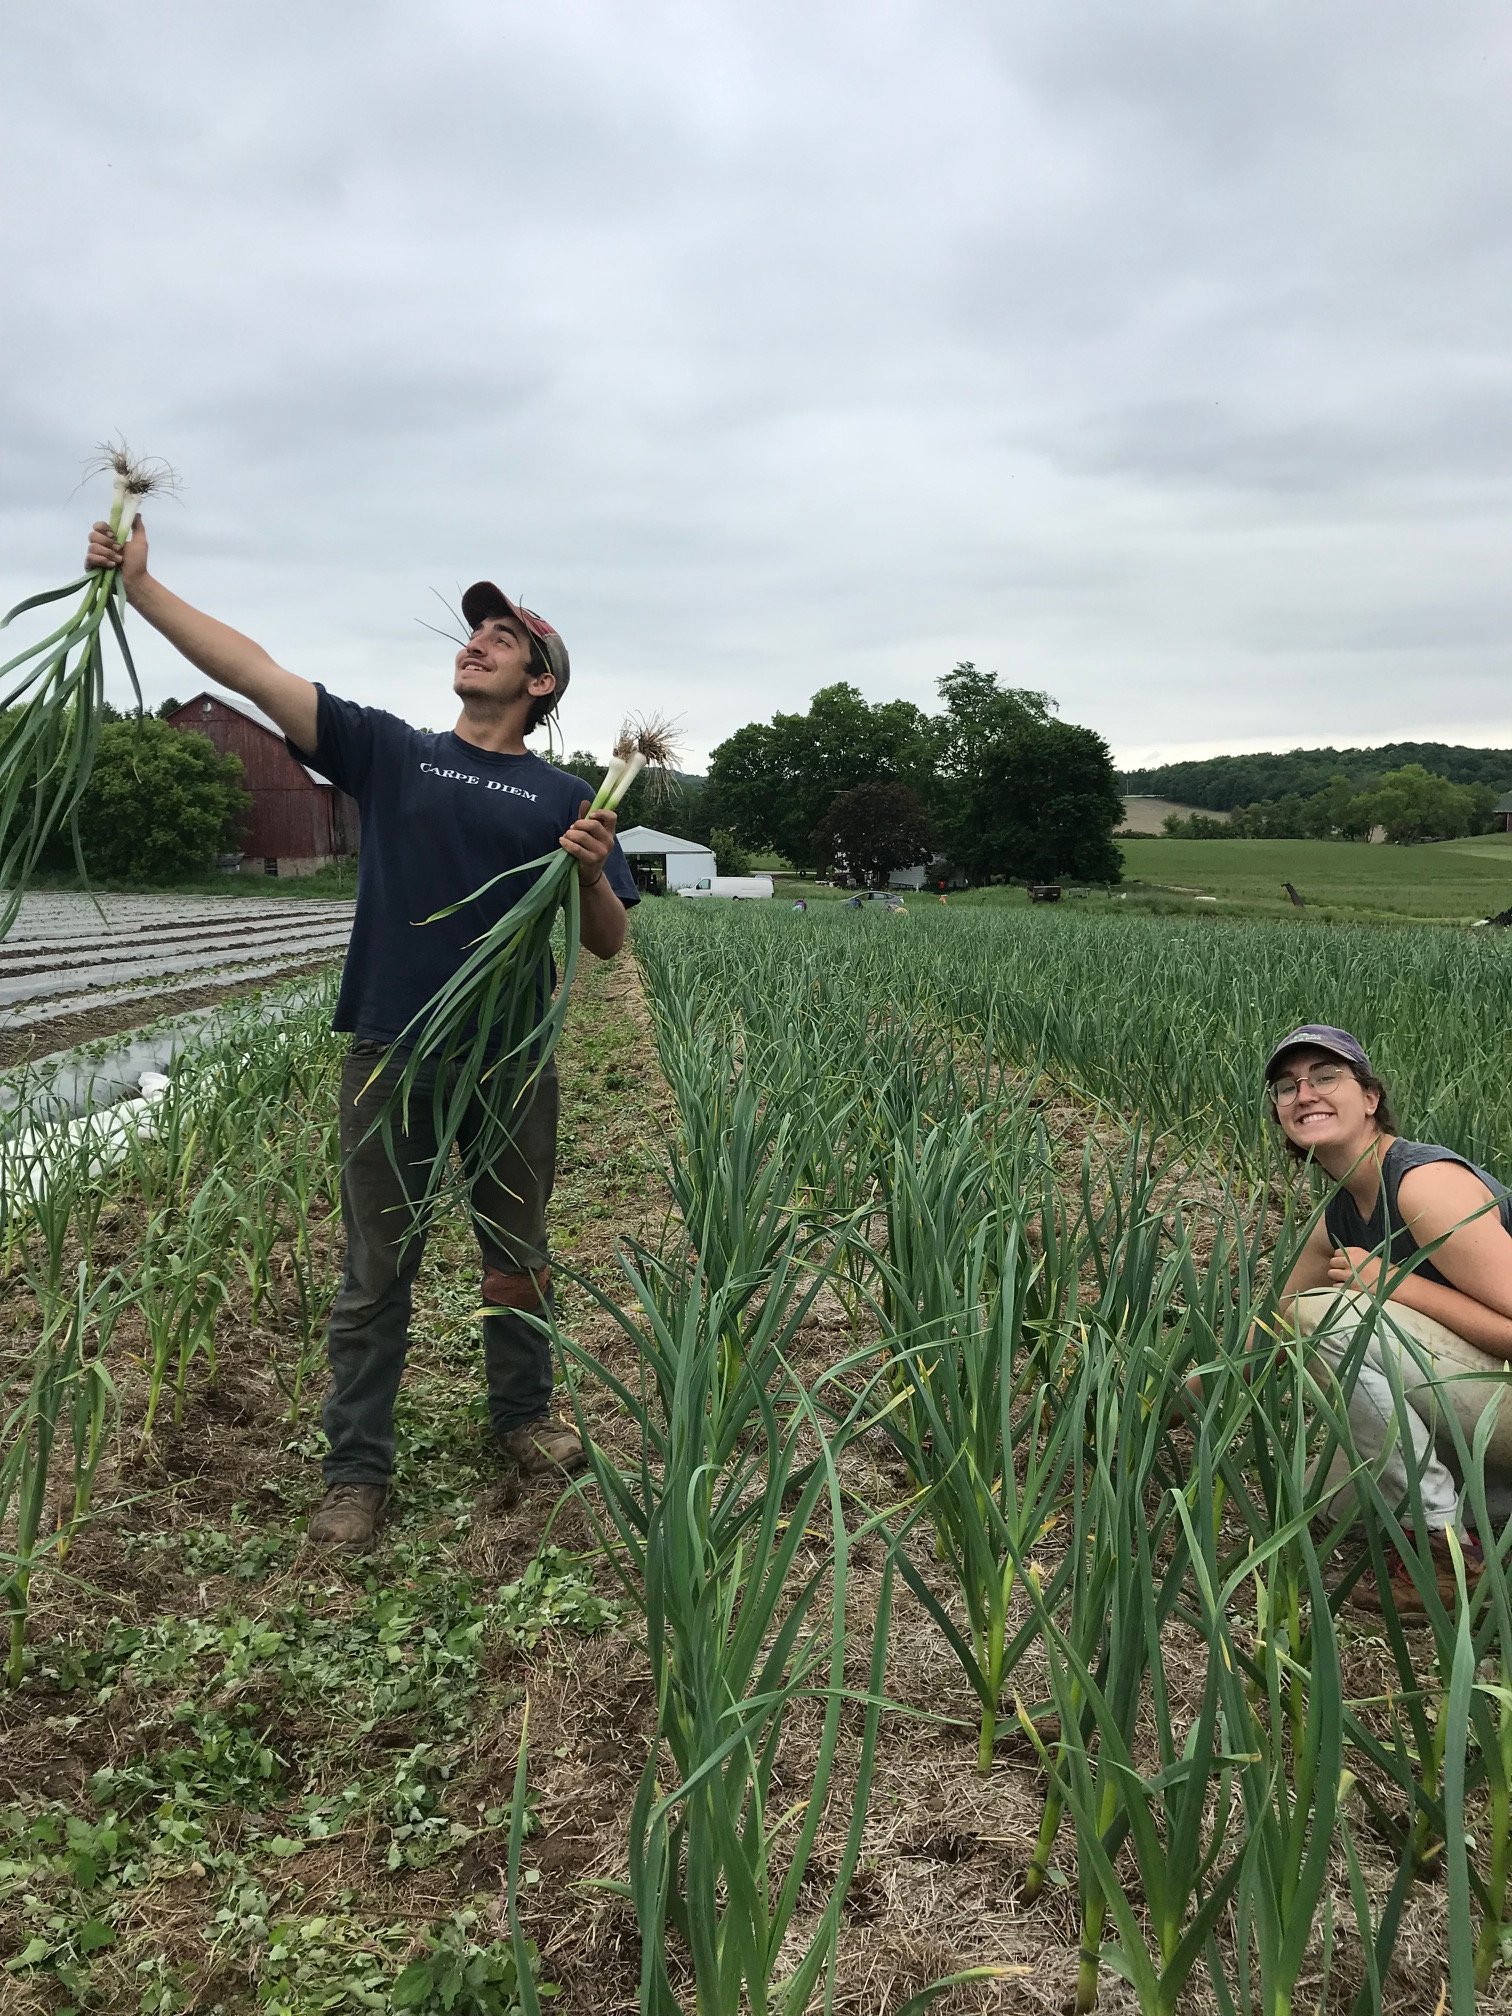 Previous Happening: Farm Happenings for June 19, 2019